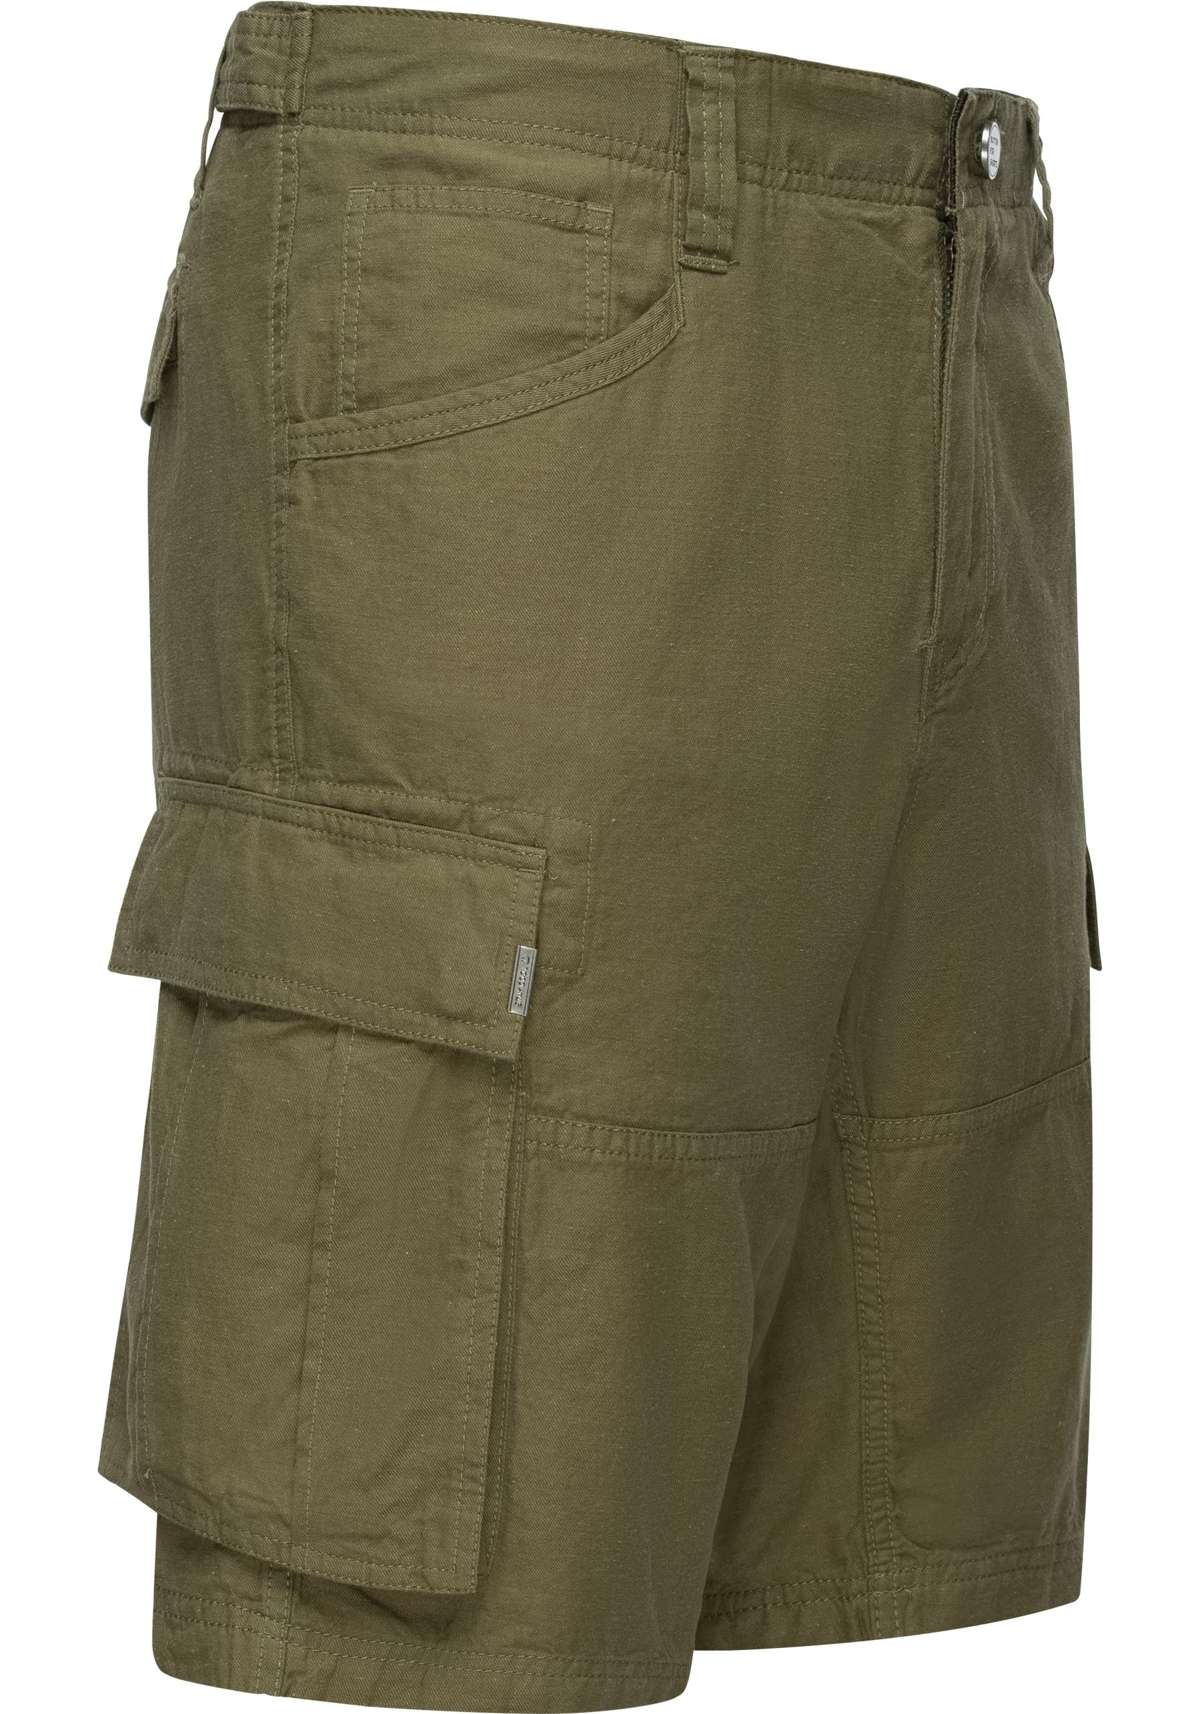 Шорты, (1 шт.), короткие льняные брюки в стиле карго.